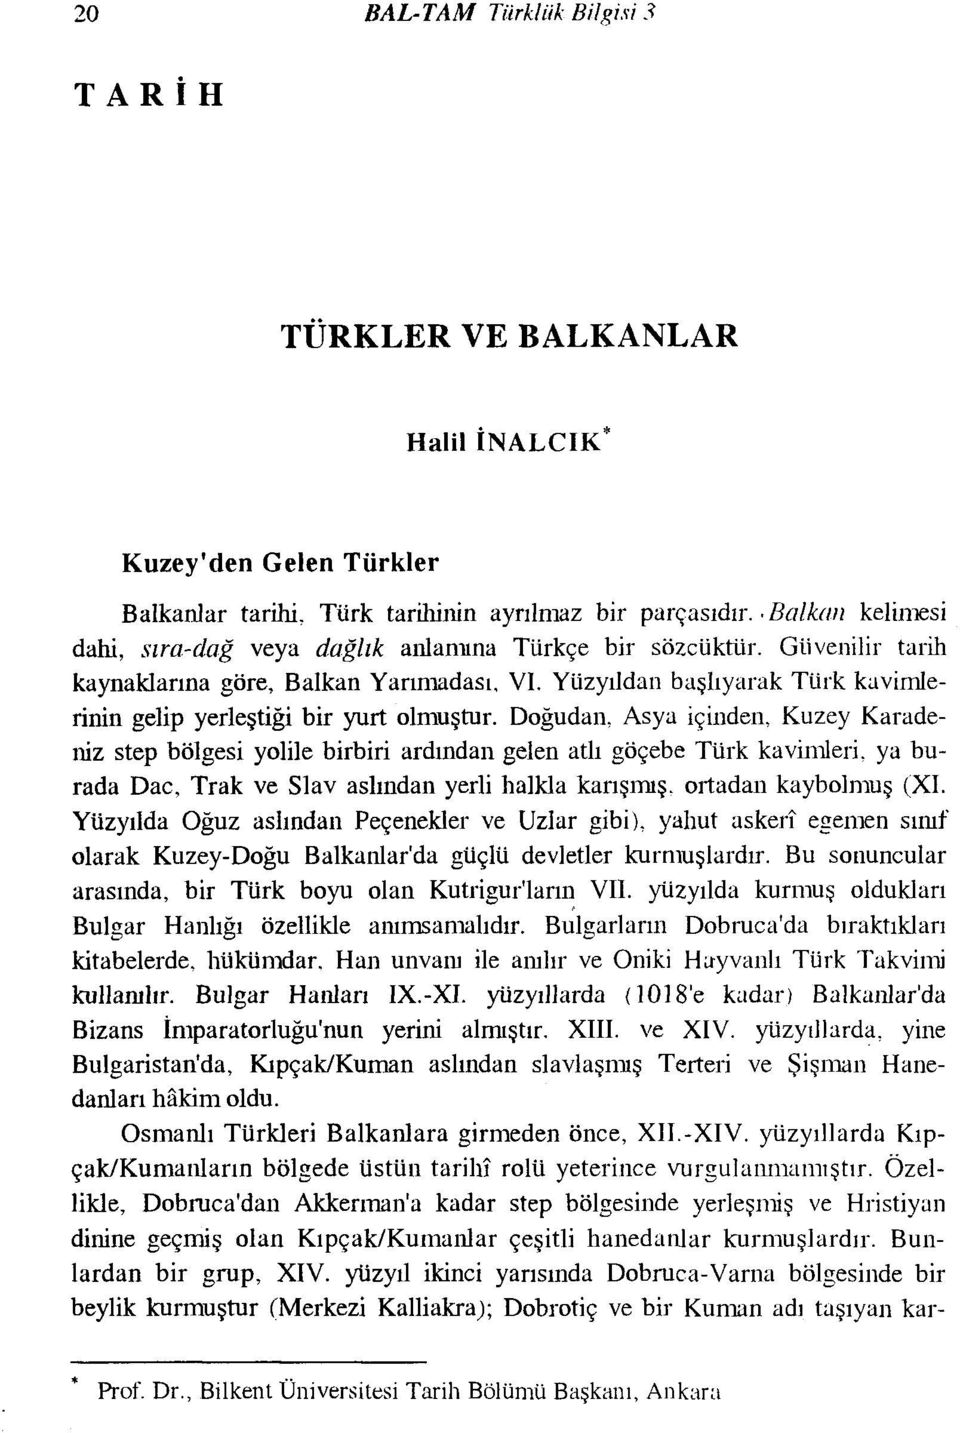 Yüzyıldan başlıyatak Türk kavimlerinin gelip yerleştiği bir yurt olmuştur.